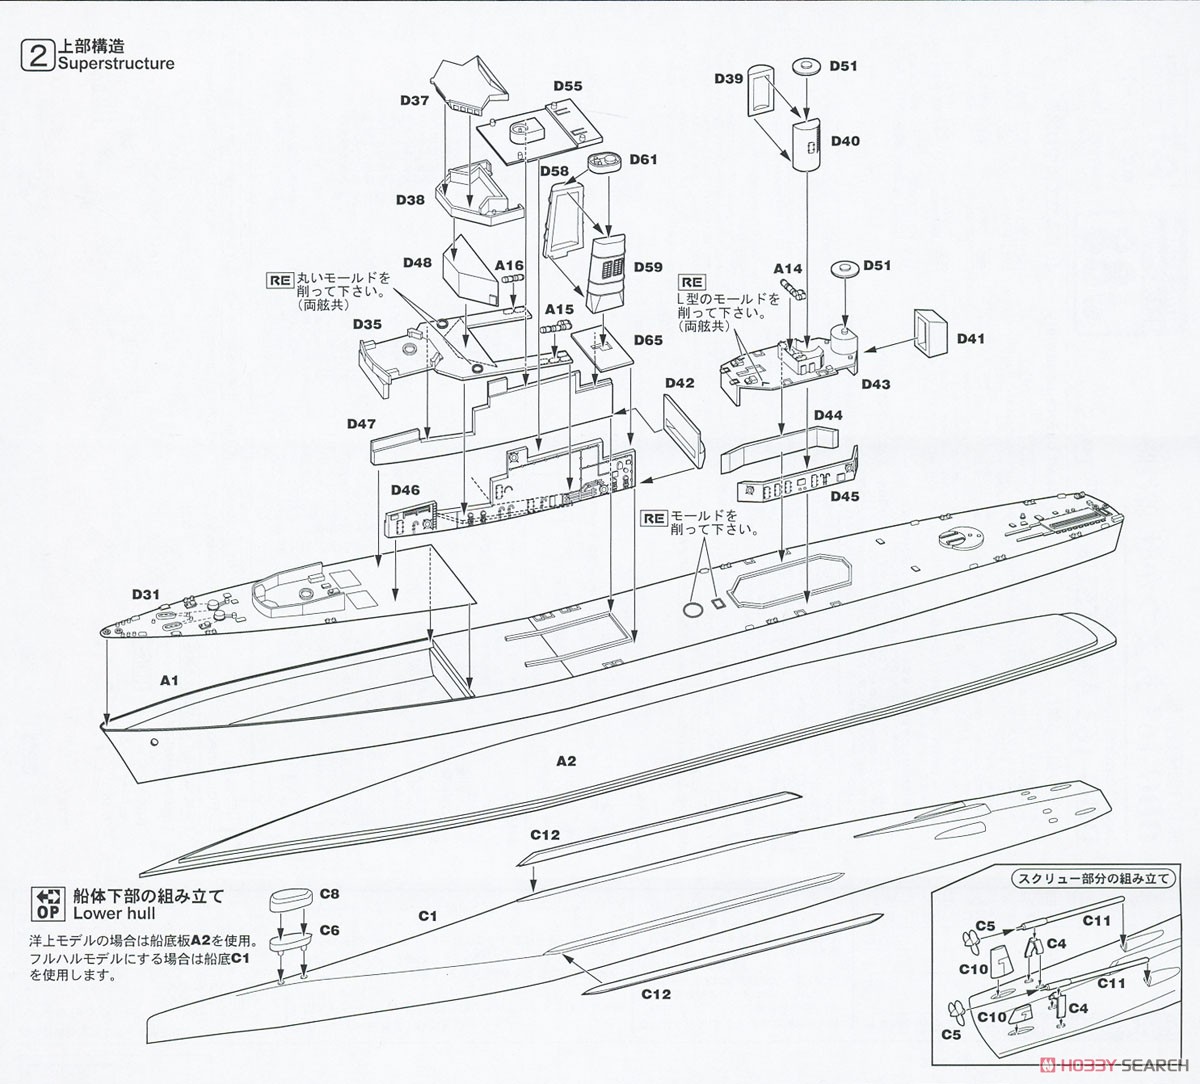 海上自衛隊 護衛艦 DDG-163 あまつかぜ 就役時 (プラモデル) 設計図2